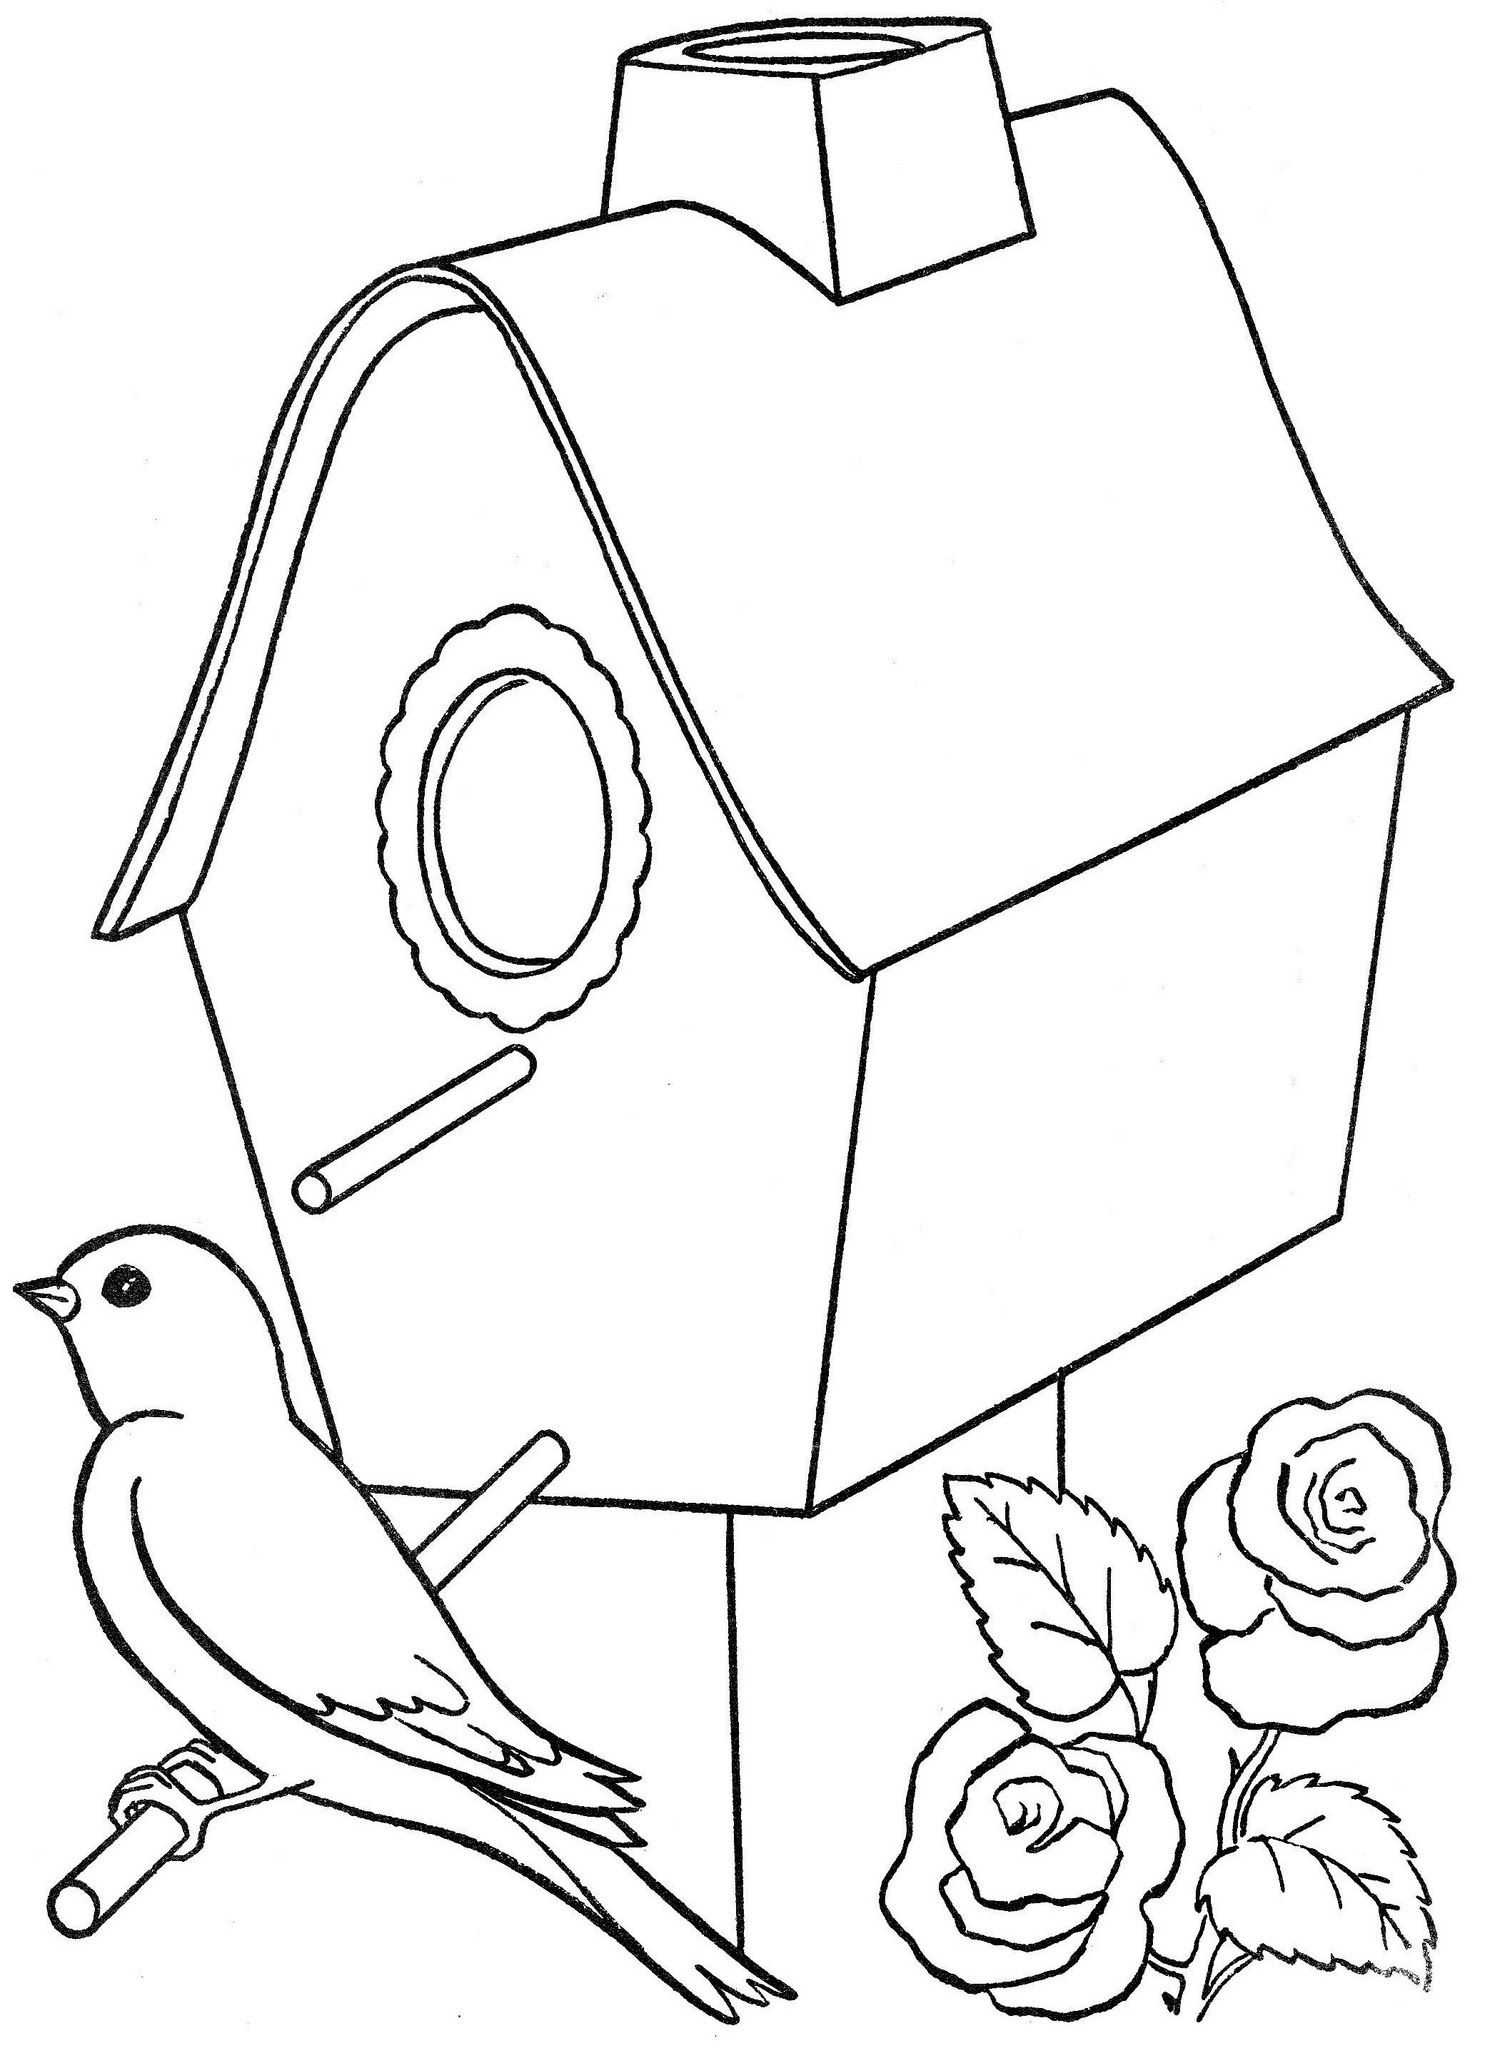 Как нарисовать птицу: поэтапная инструкция создания красивых рисунков для детей (схема + фото)